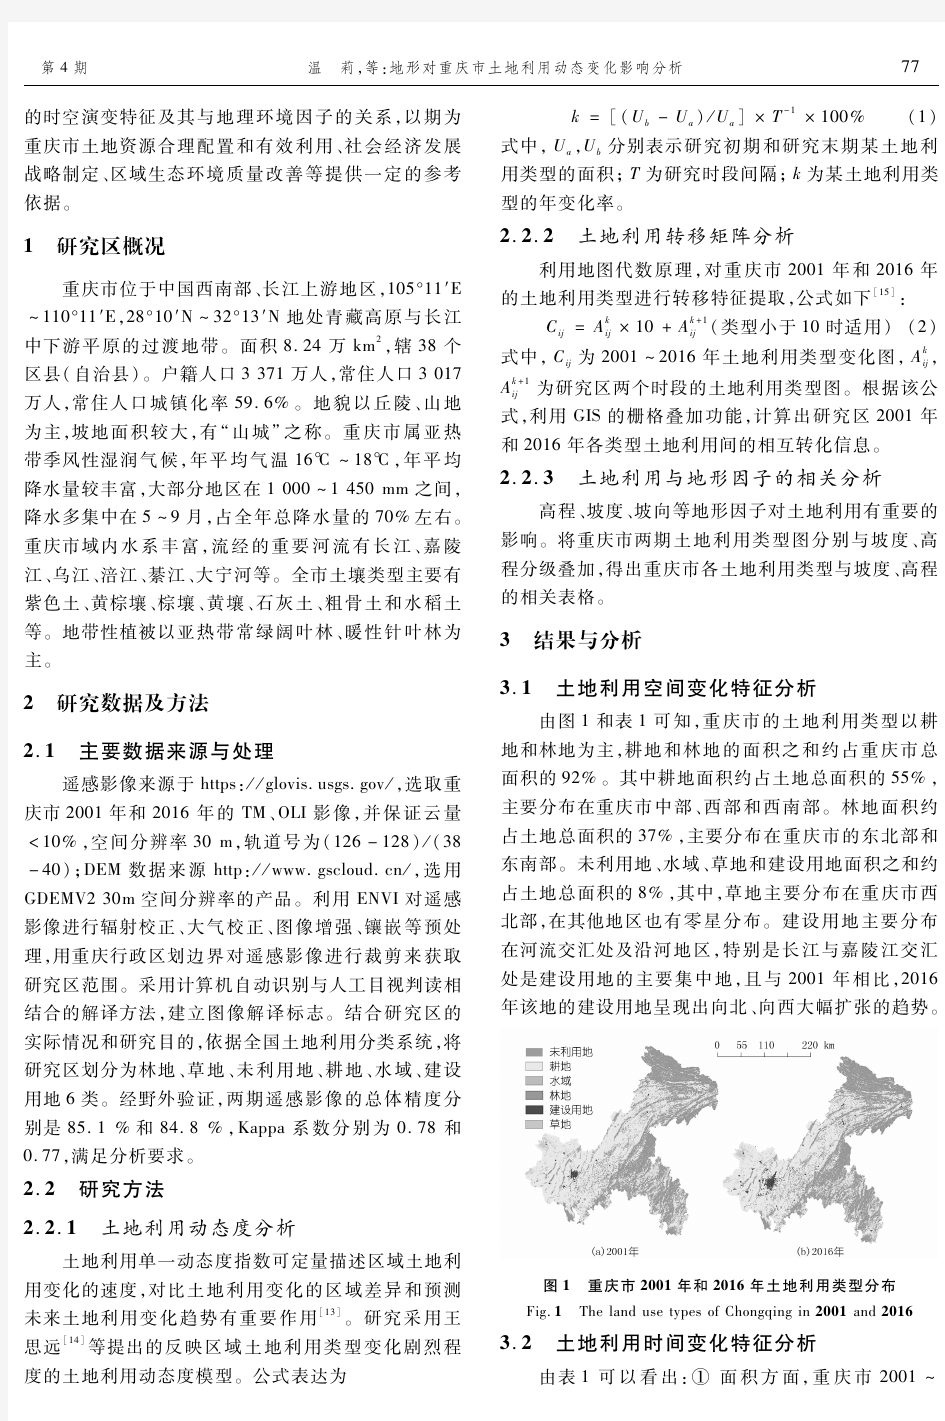 地形对重庆市土地利用动态变化影响分析